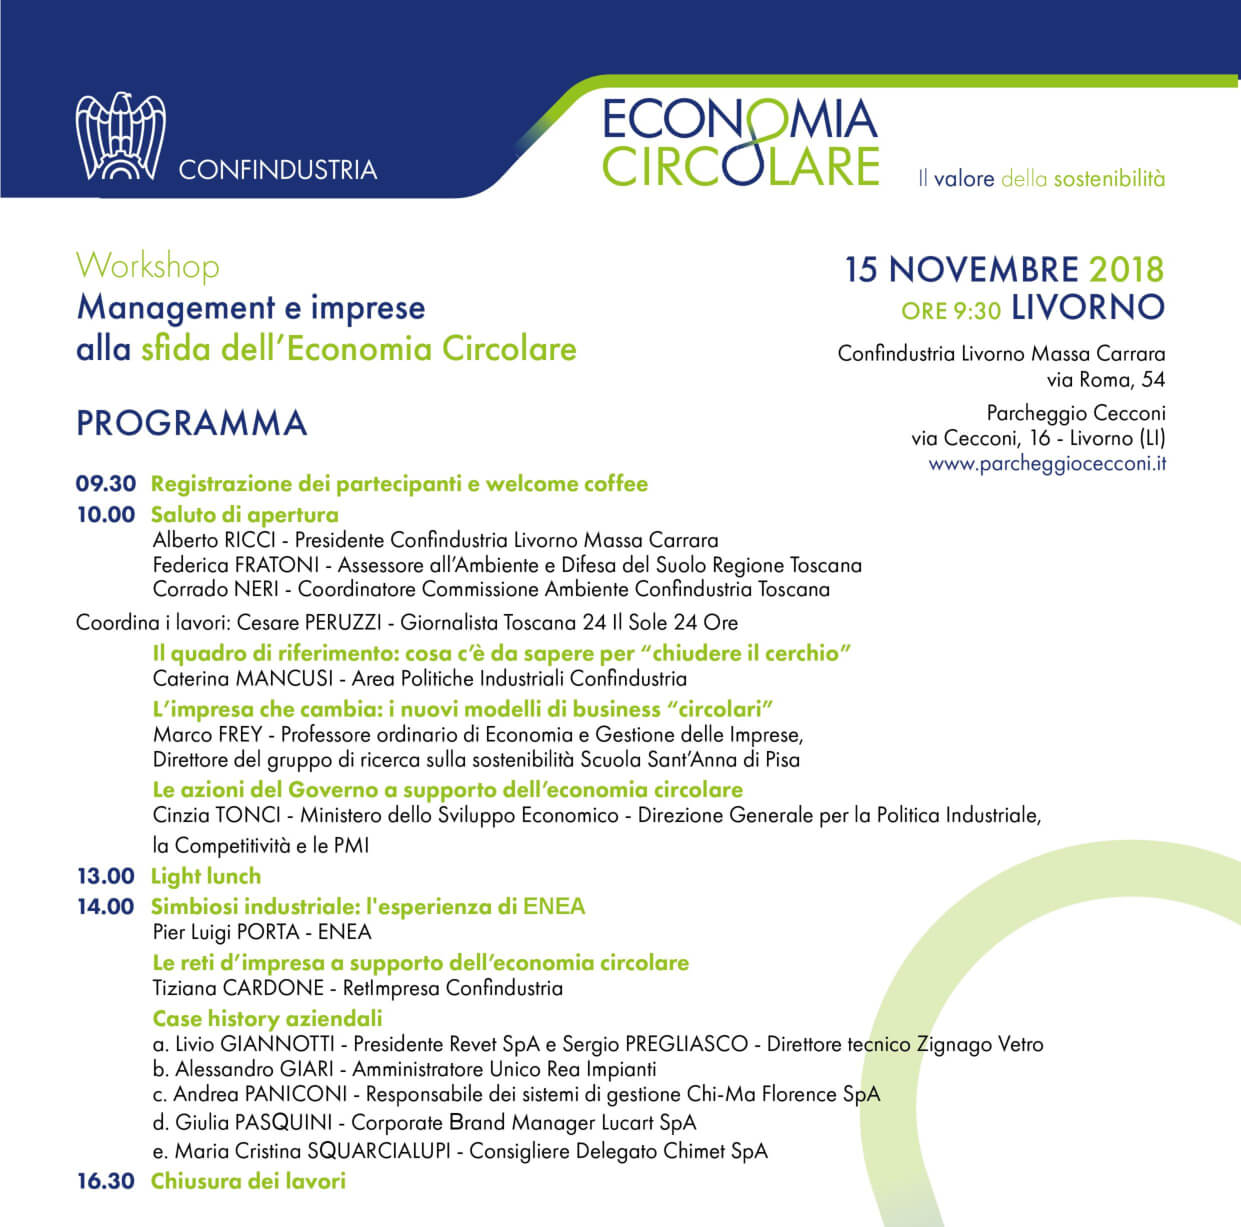 Economia Circolare, workshop gratuito a Livorno